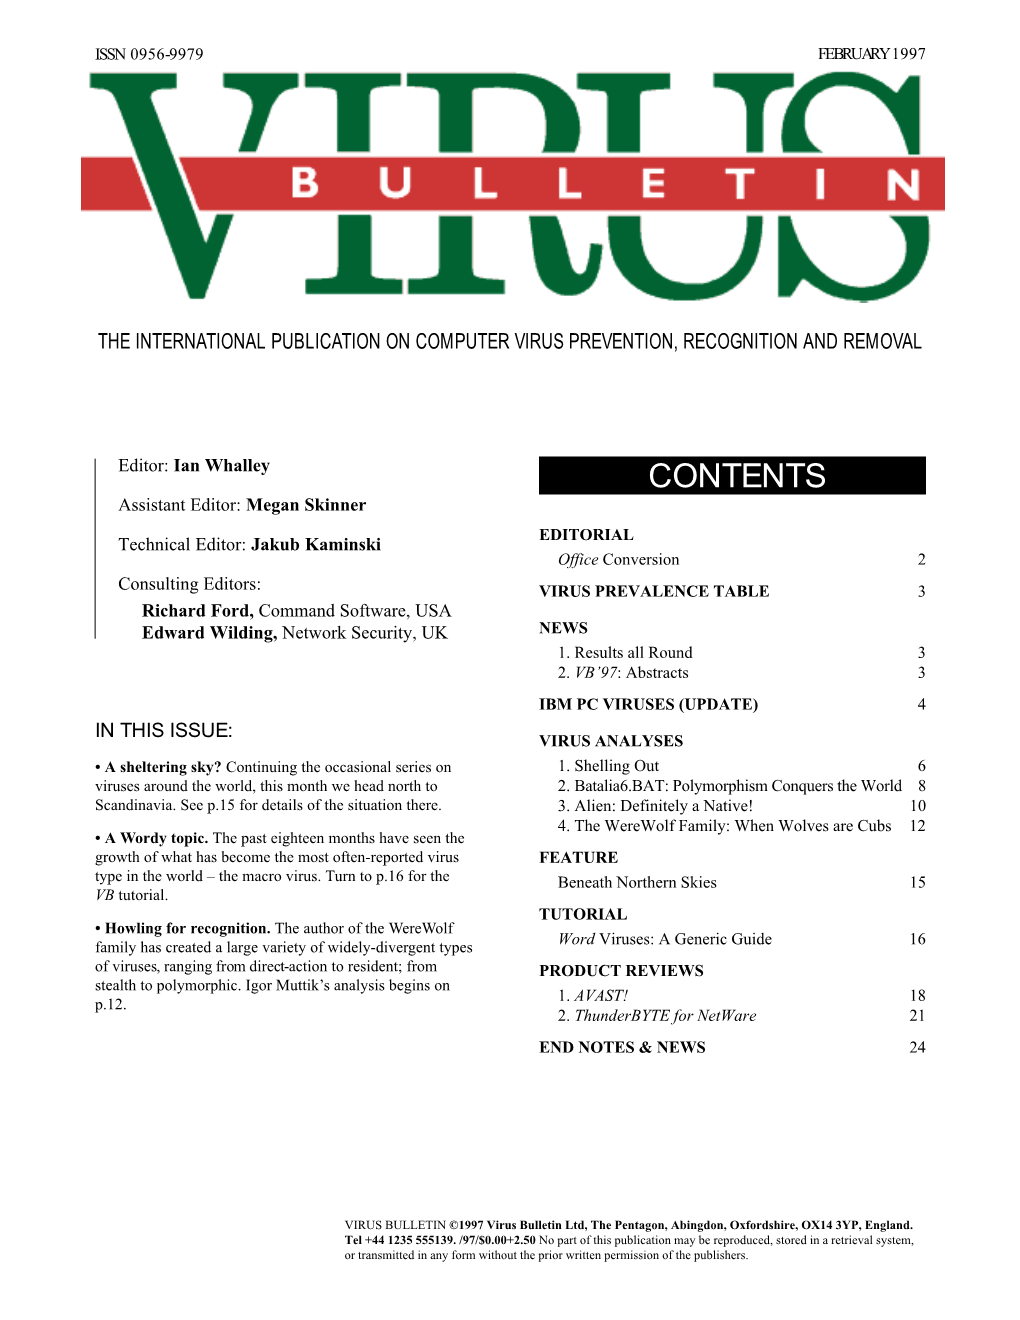 Virus Bulletin, February 1997